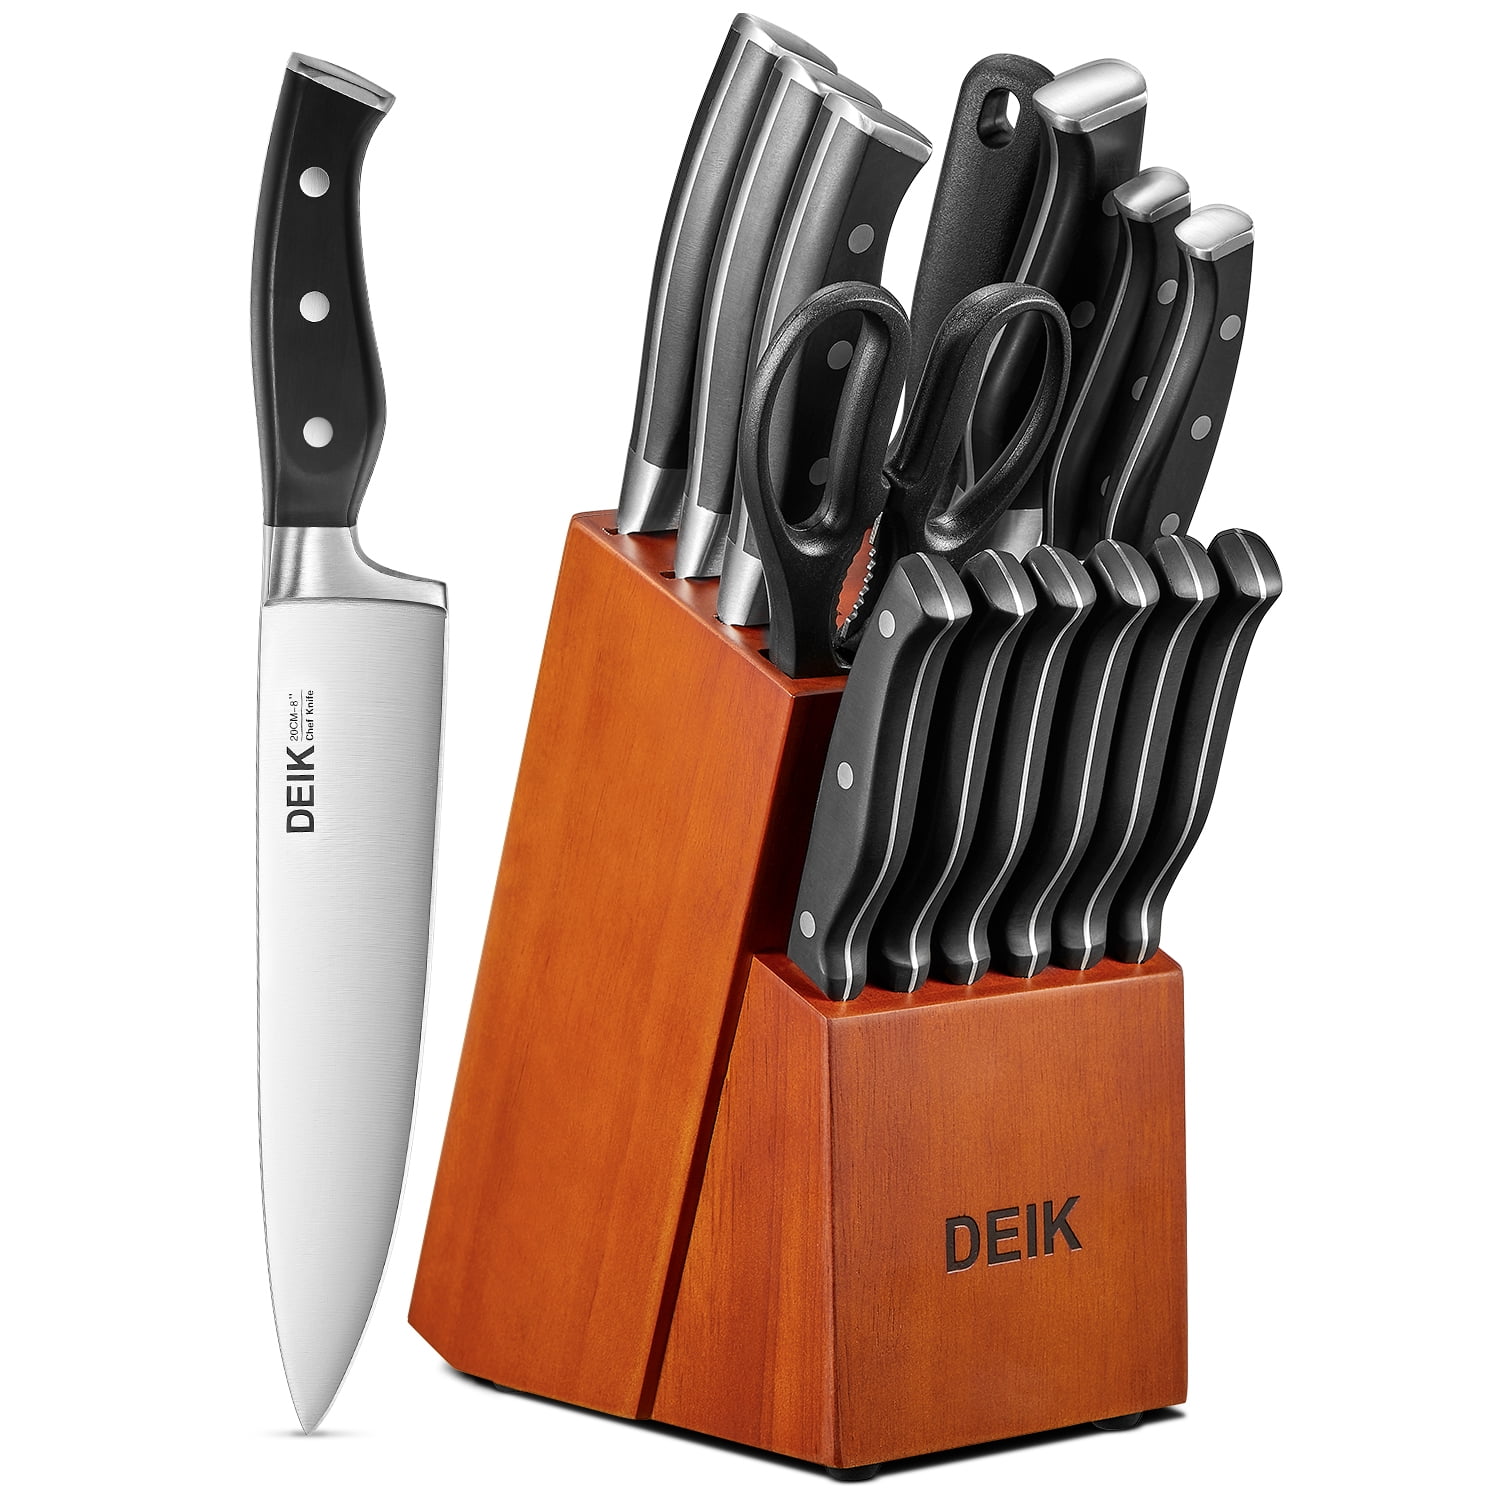 Chicago Cutlery Precision Cut Avondale 16pc Block Set P1135467 for sale online 